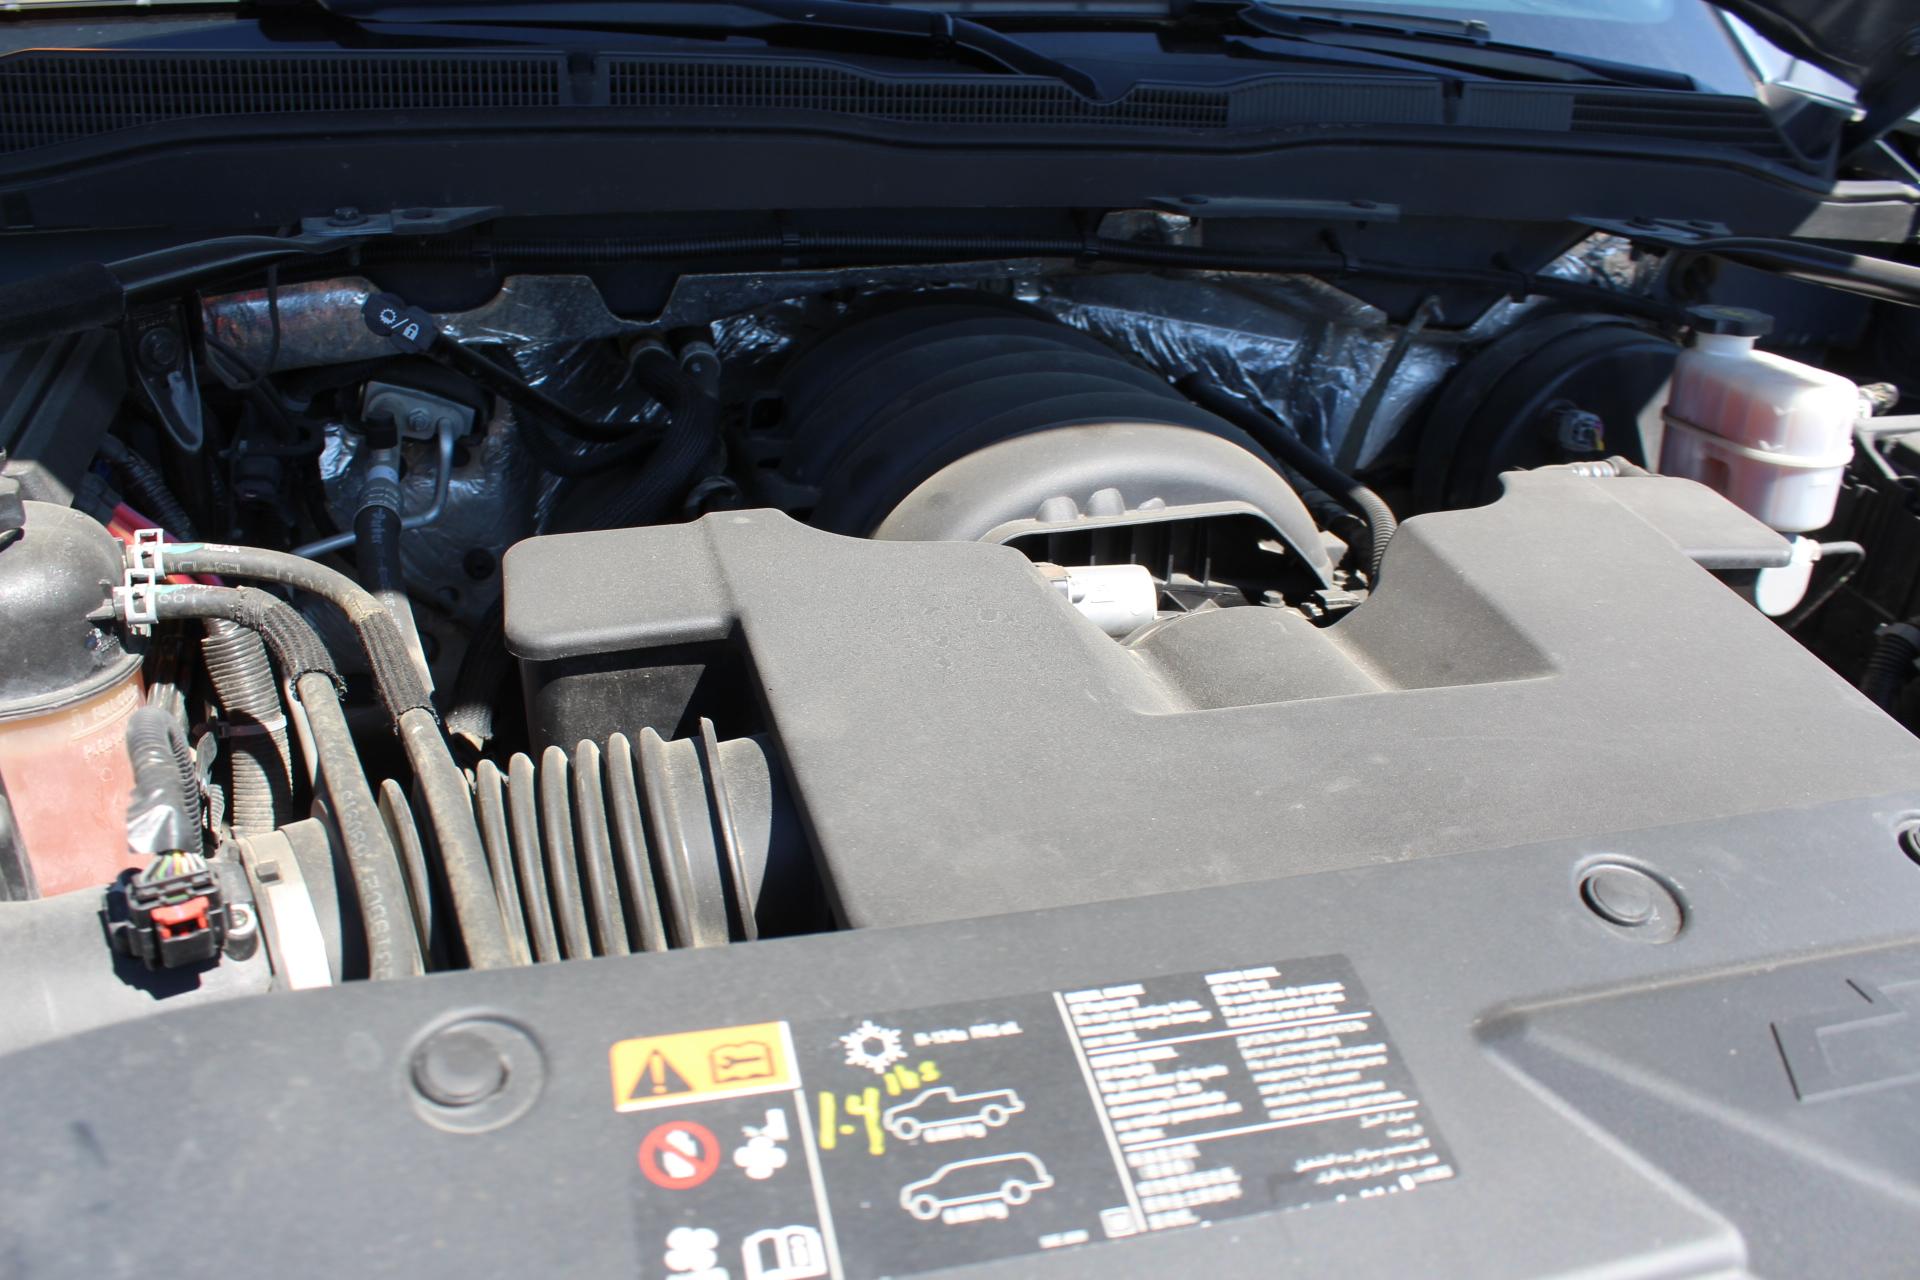 2015 Chevrolet Silverado Z71 1500, 5.3L Flex Fuel, Auto 4x4, Auto Trans, 4 Door, 5'8" Box